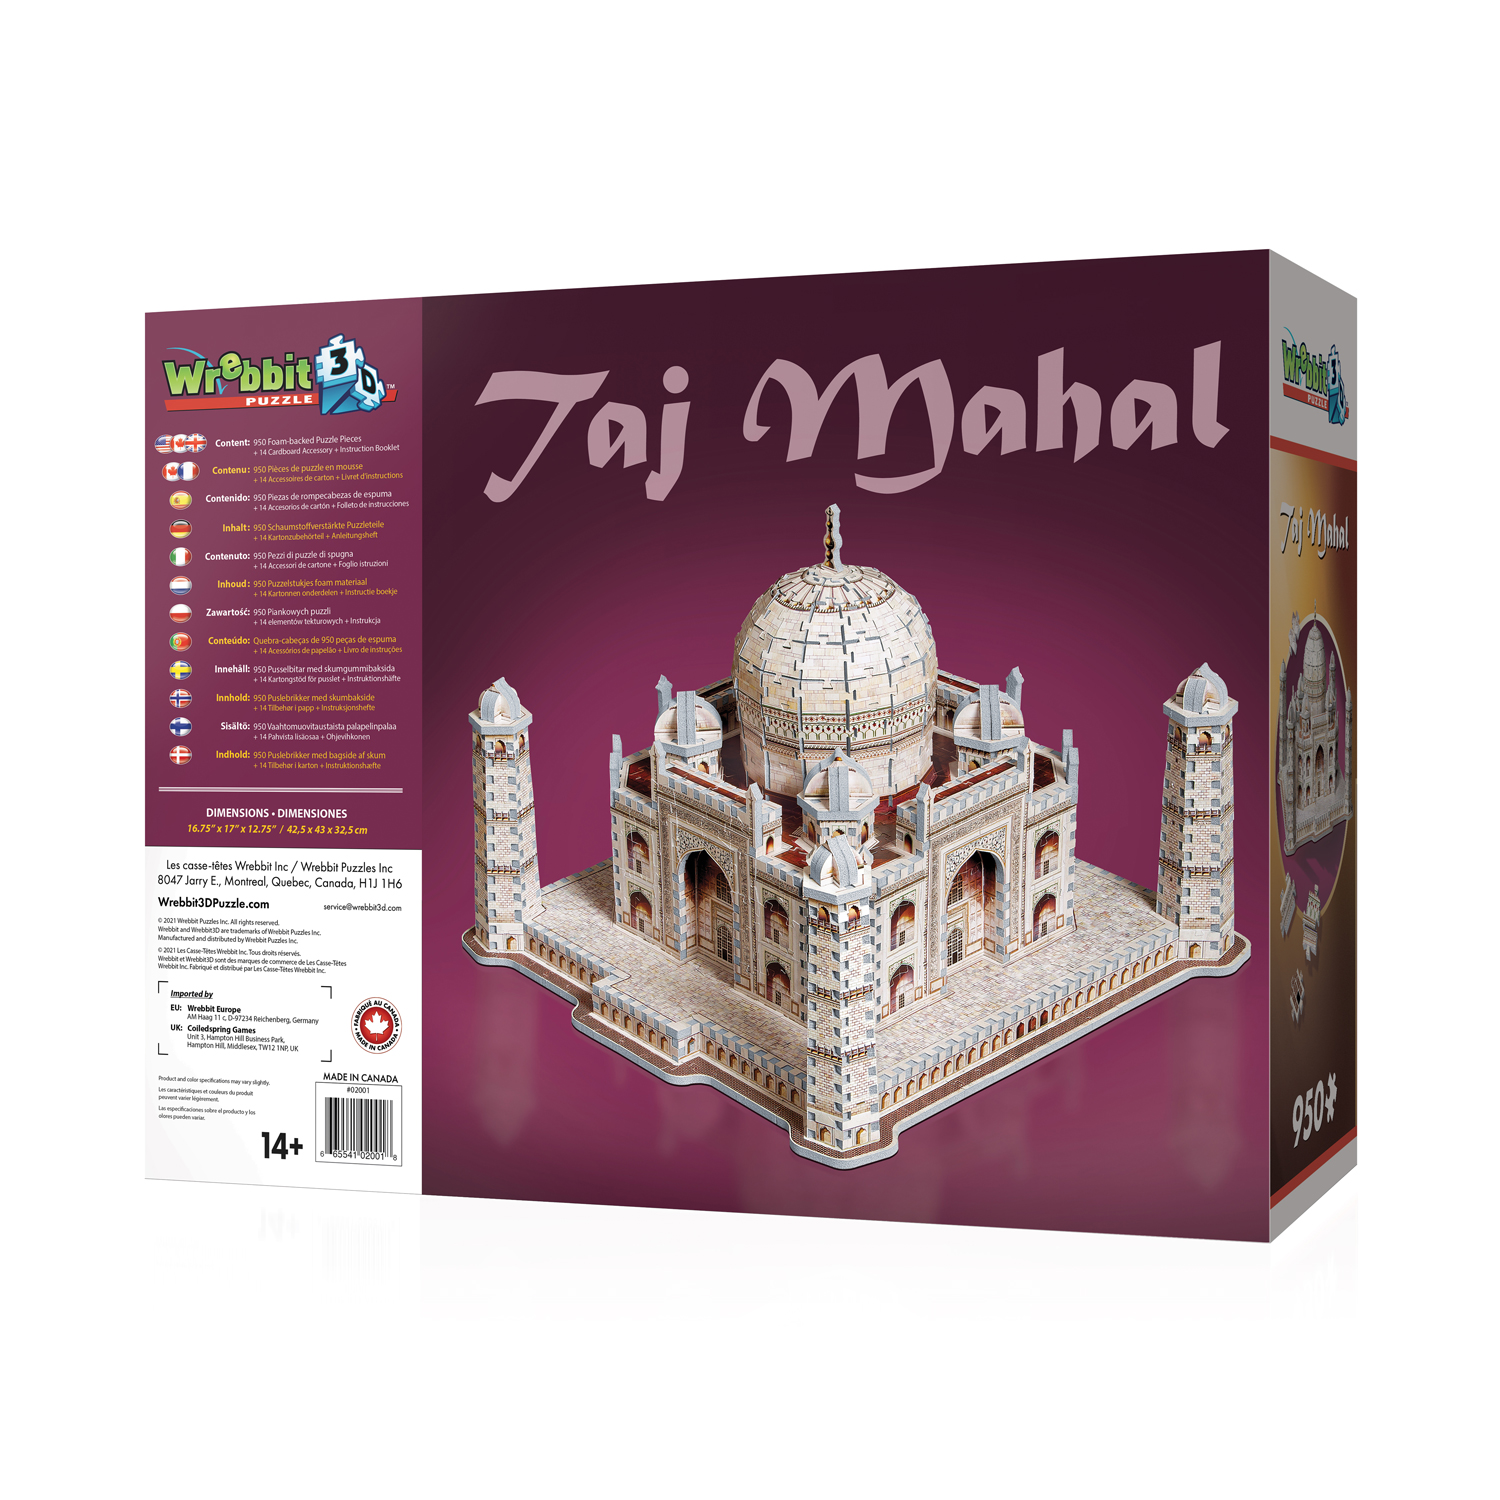 3D Puzzle Welt Berühmte Puzzle Taj Mahal Indien Empire State Building Stonehenge 